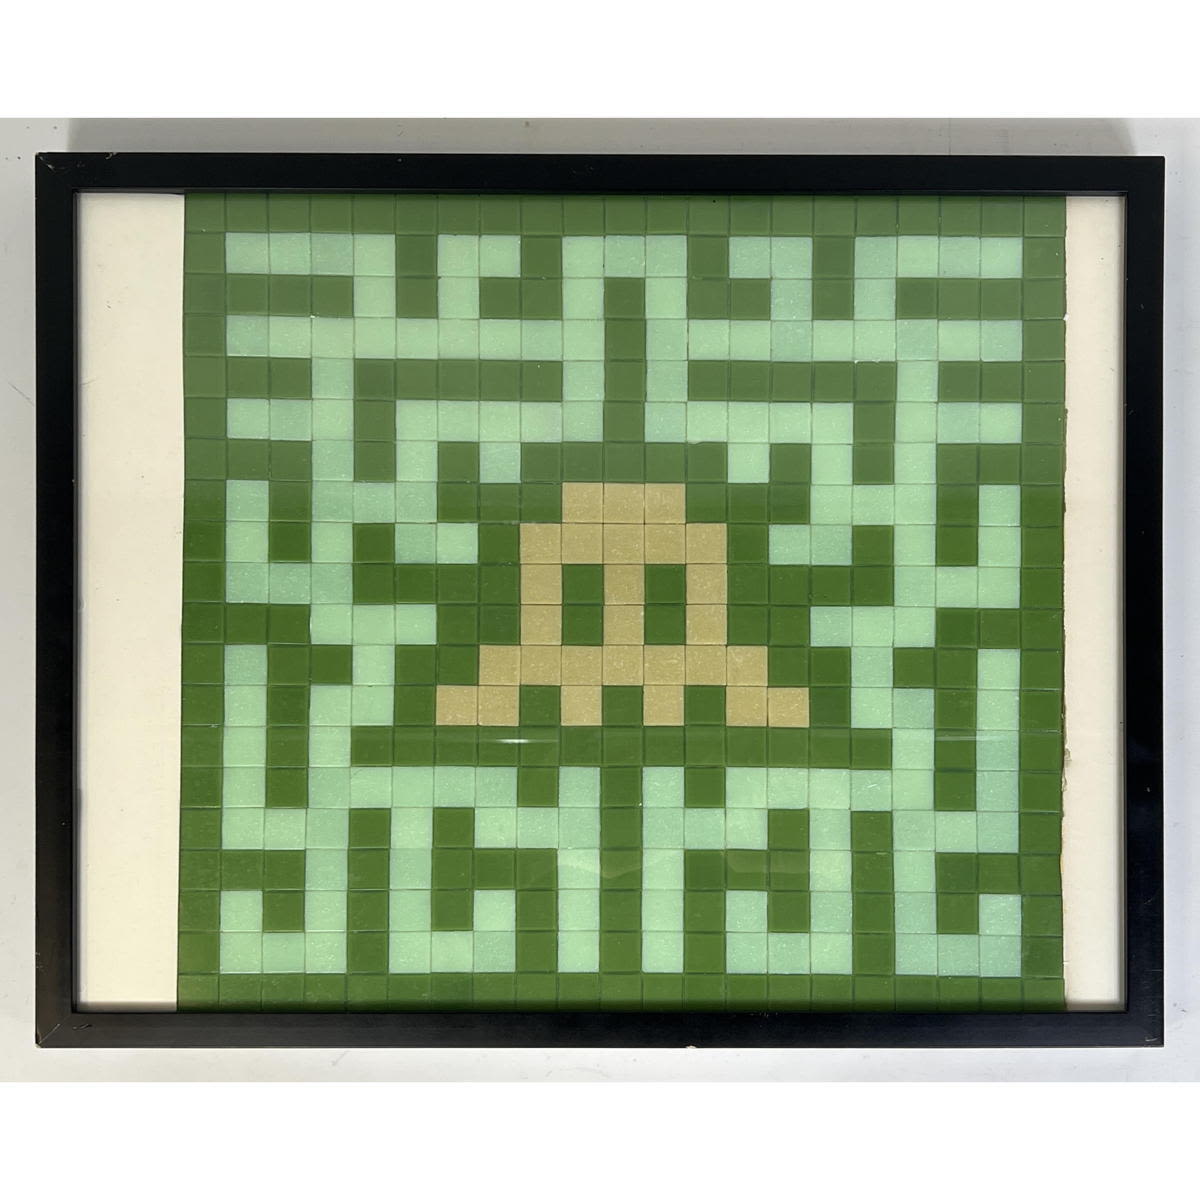 Space Invader Square Tile Op art.